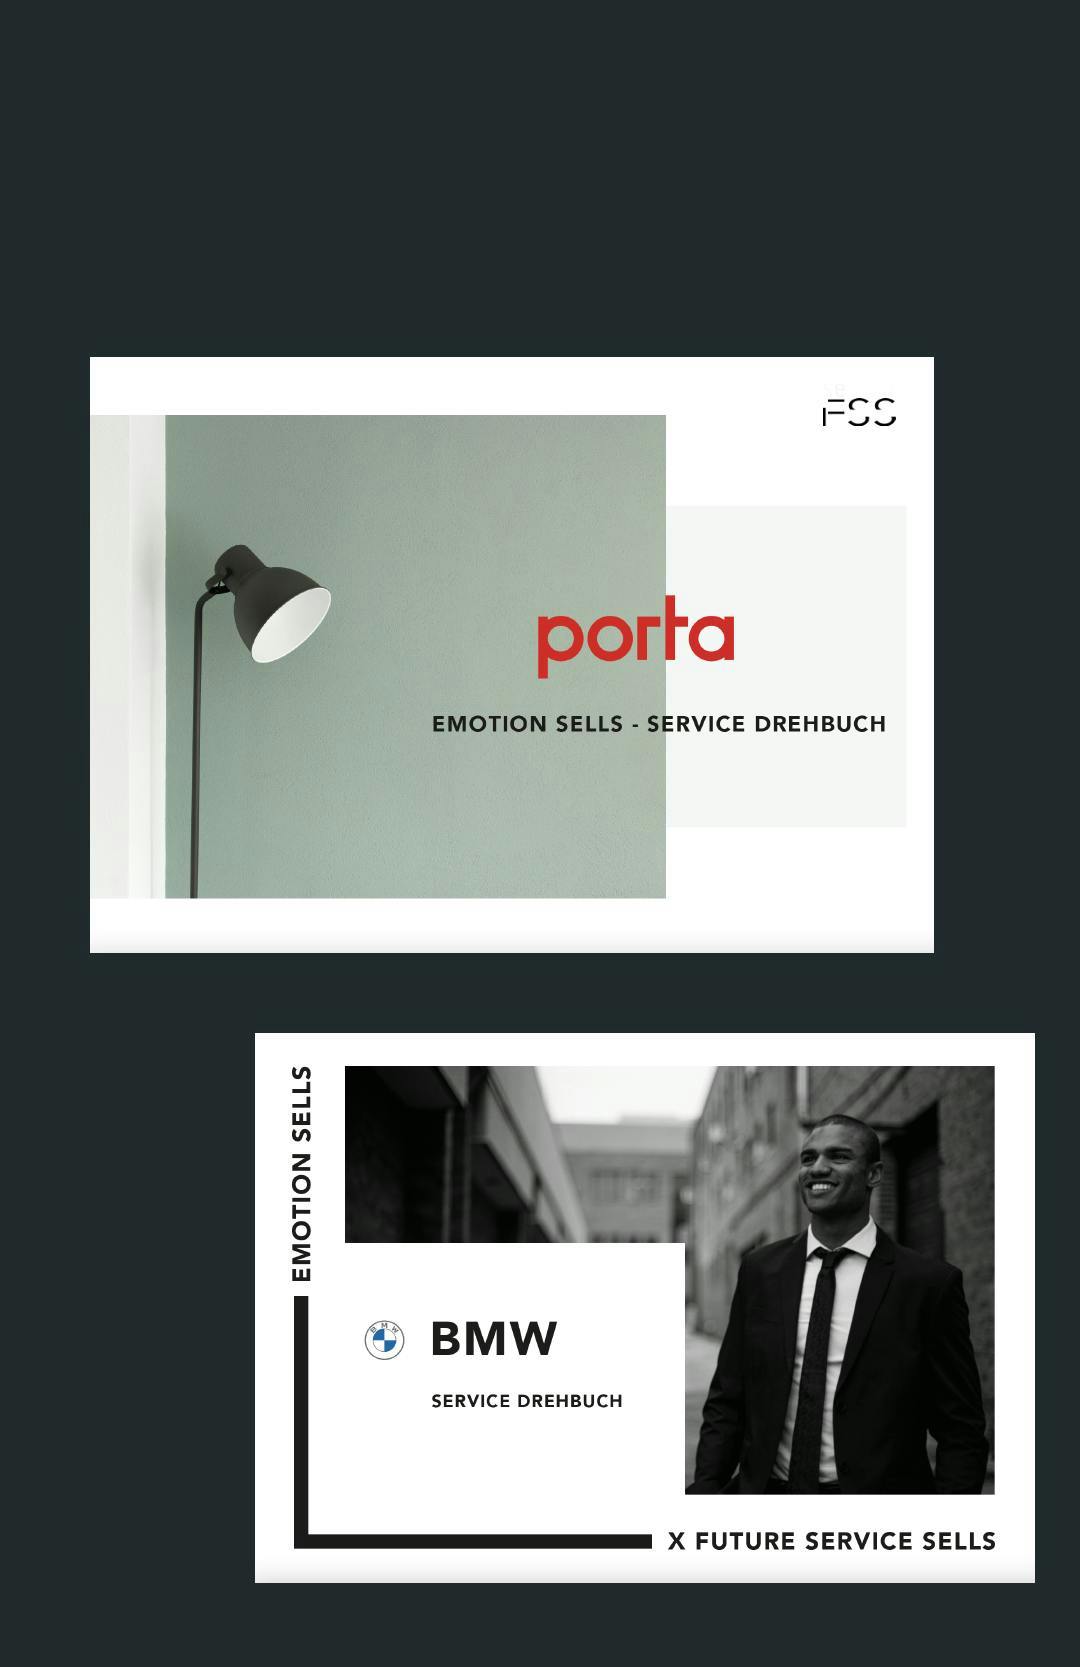 Service Drehbuch BMW und Porta